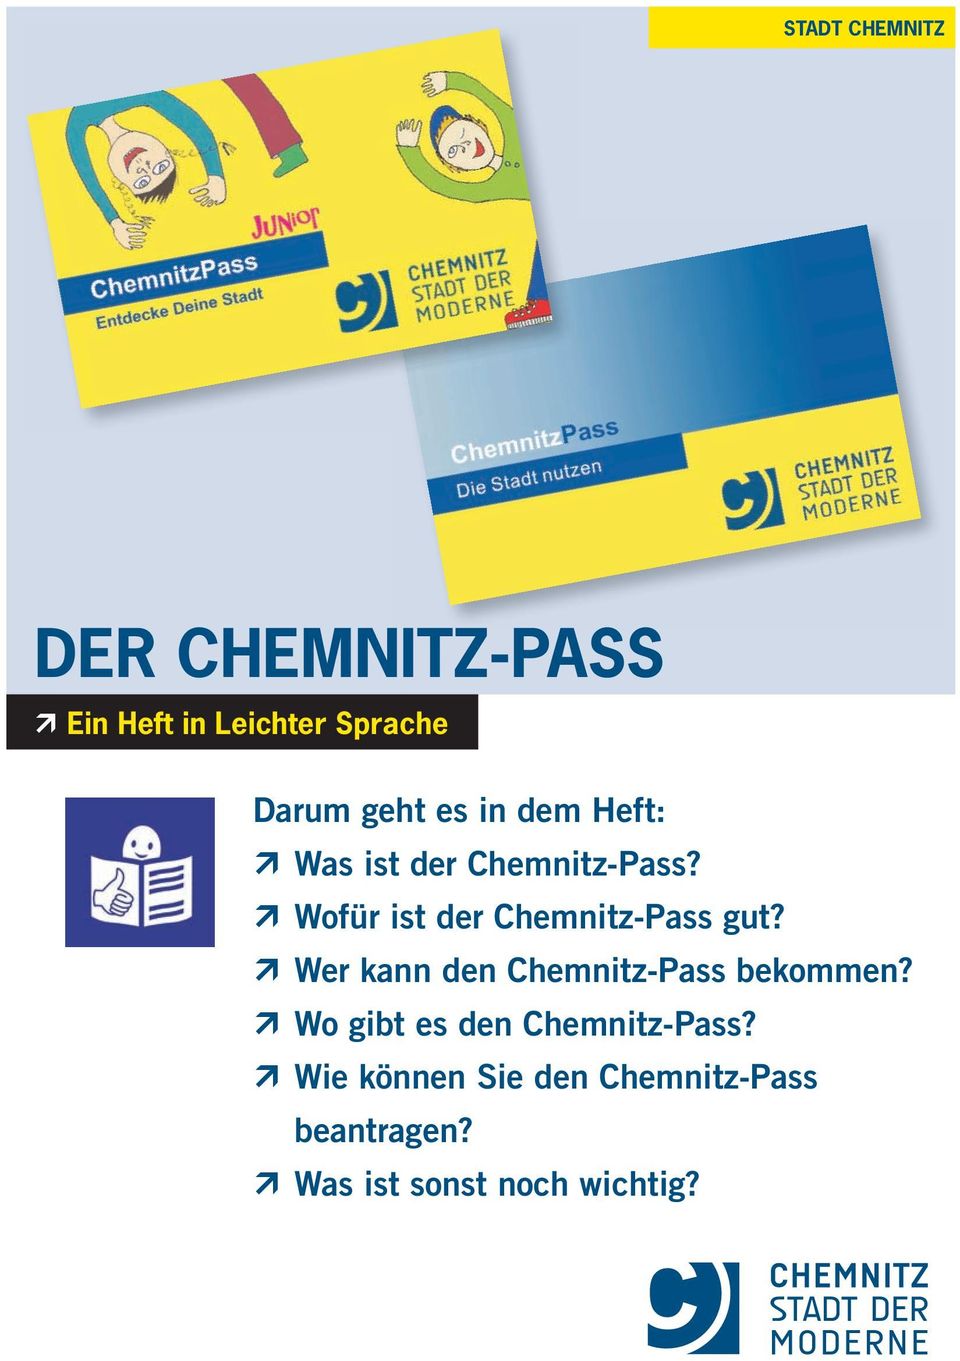 Wofür ist der Chemnitz-Pass gut? Wer kann den Chemnitz-Pass bekommen?